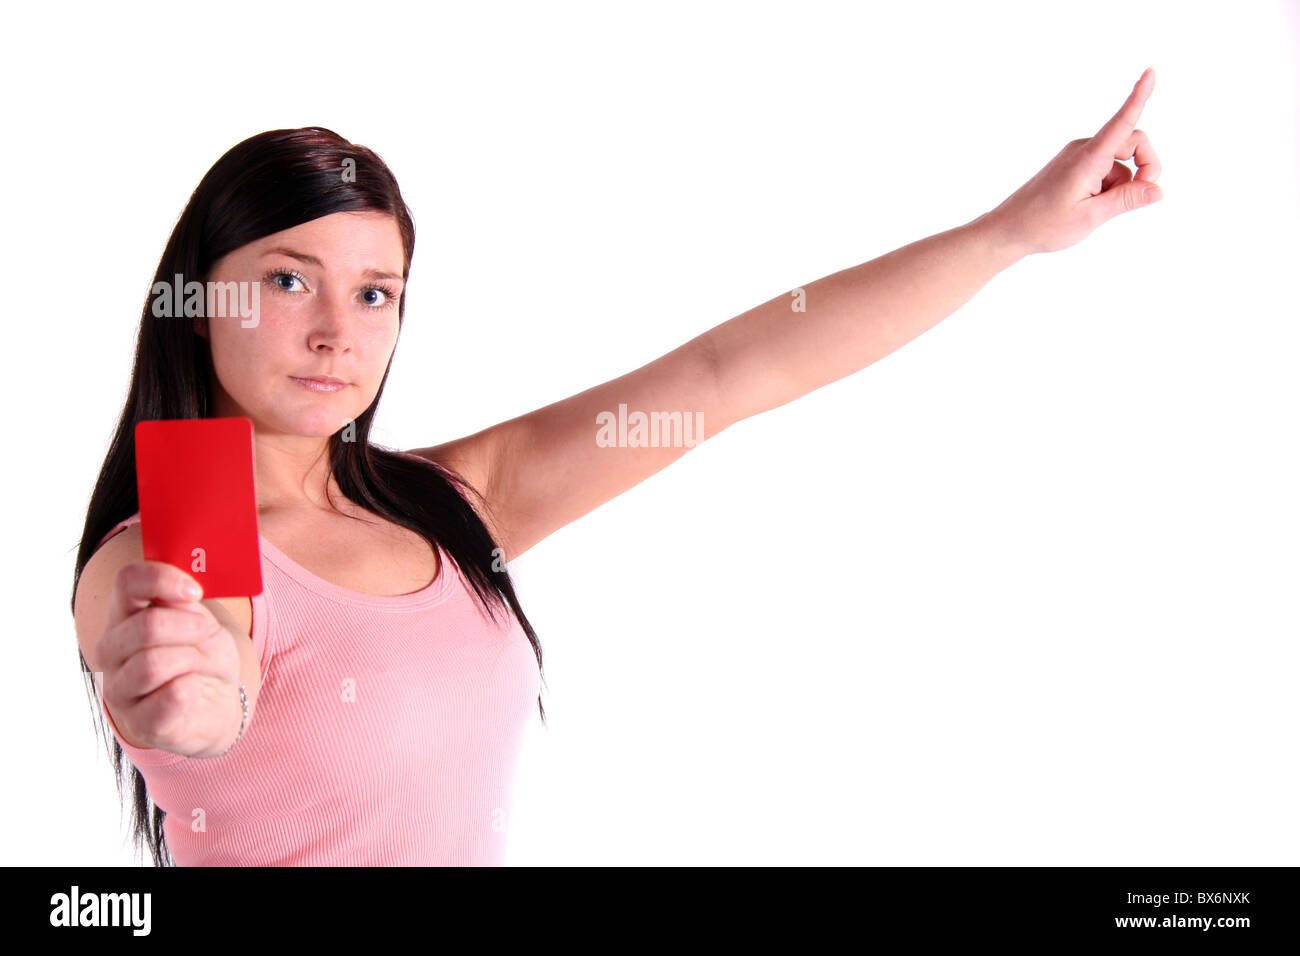 Attraente giovane donna che mostra un cartellino rosso. Tutto su sfondo bianco. Foto Stock